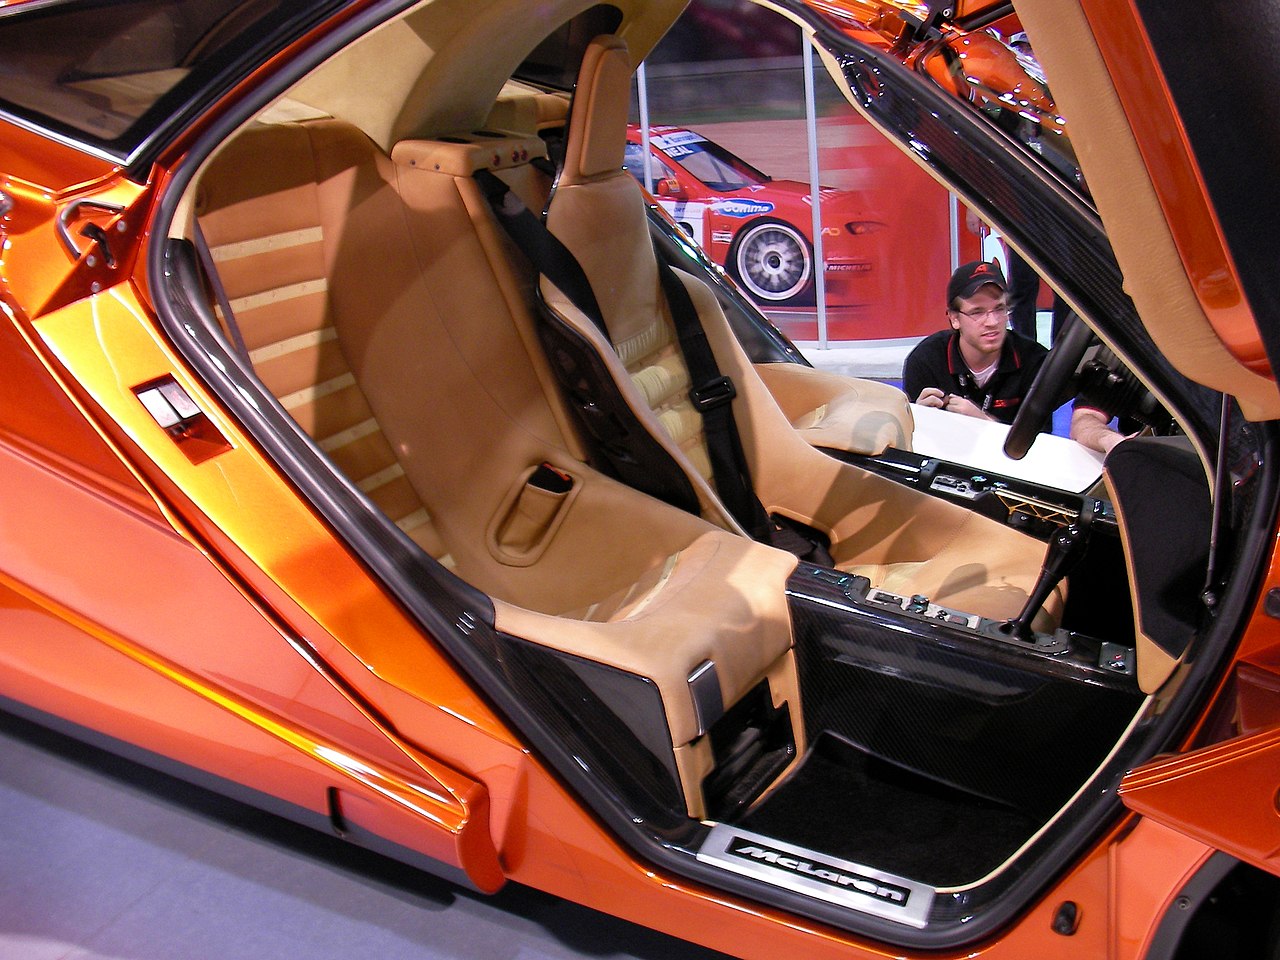 1280px-Orange_McLaren_F1_interior.jpg